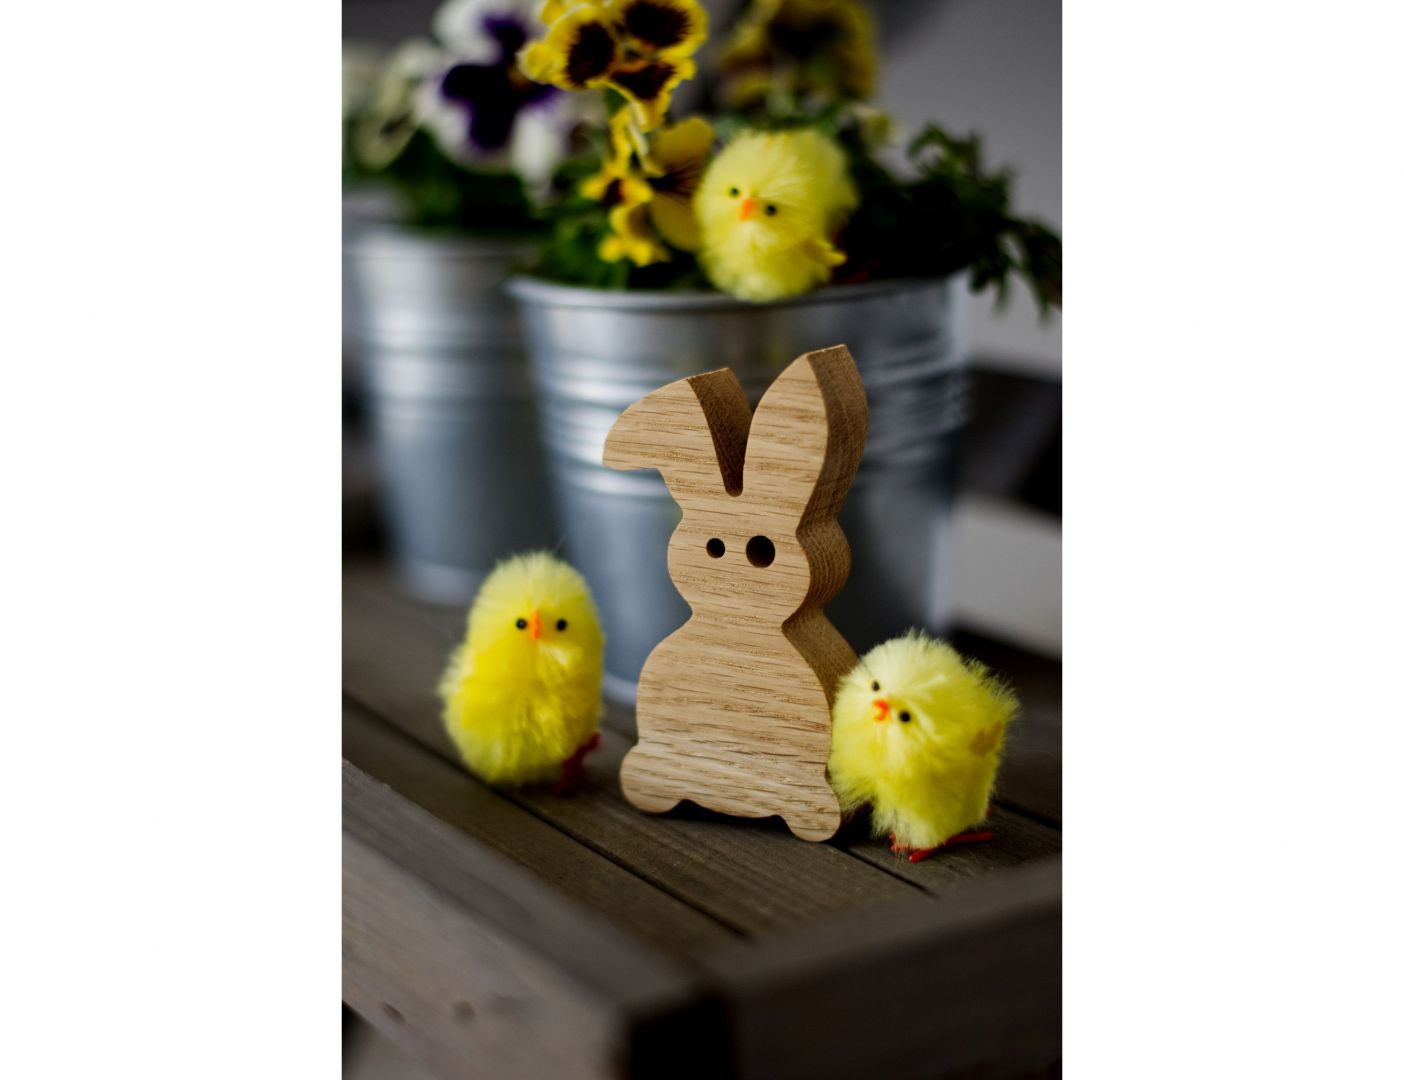 Wielkanocne dekoracje: drewniany króliczek. Fot. Pakamera.pl